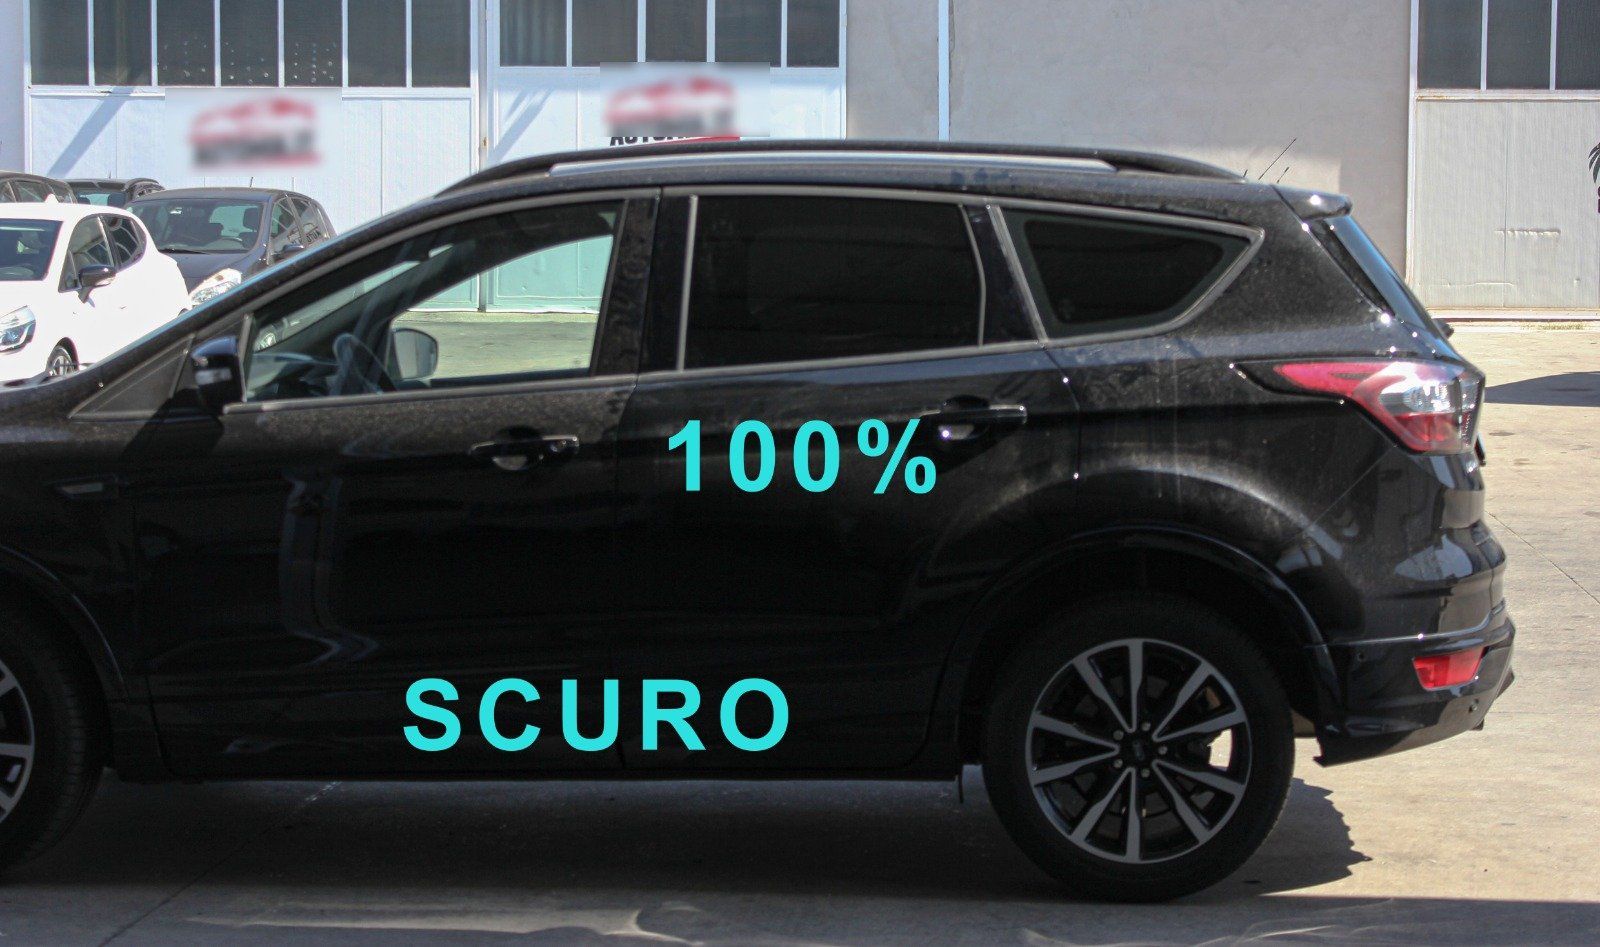 Gradazione  tonalità oscuramento vetri auto con pellicole oscuranti al 100% scuro  Ford Kuga del 2019